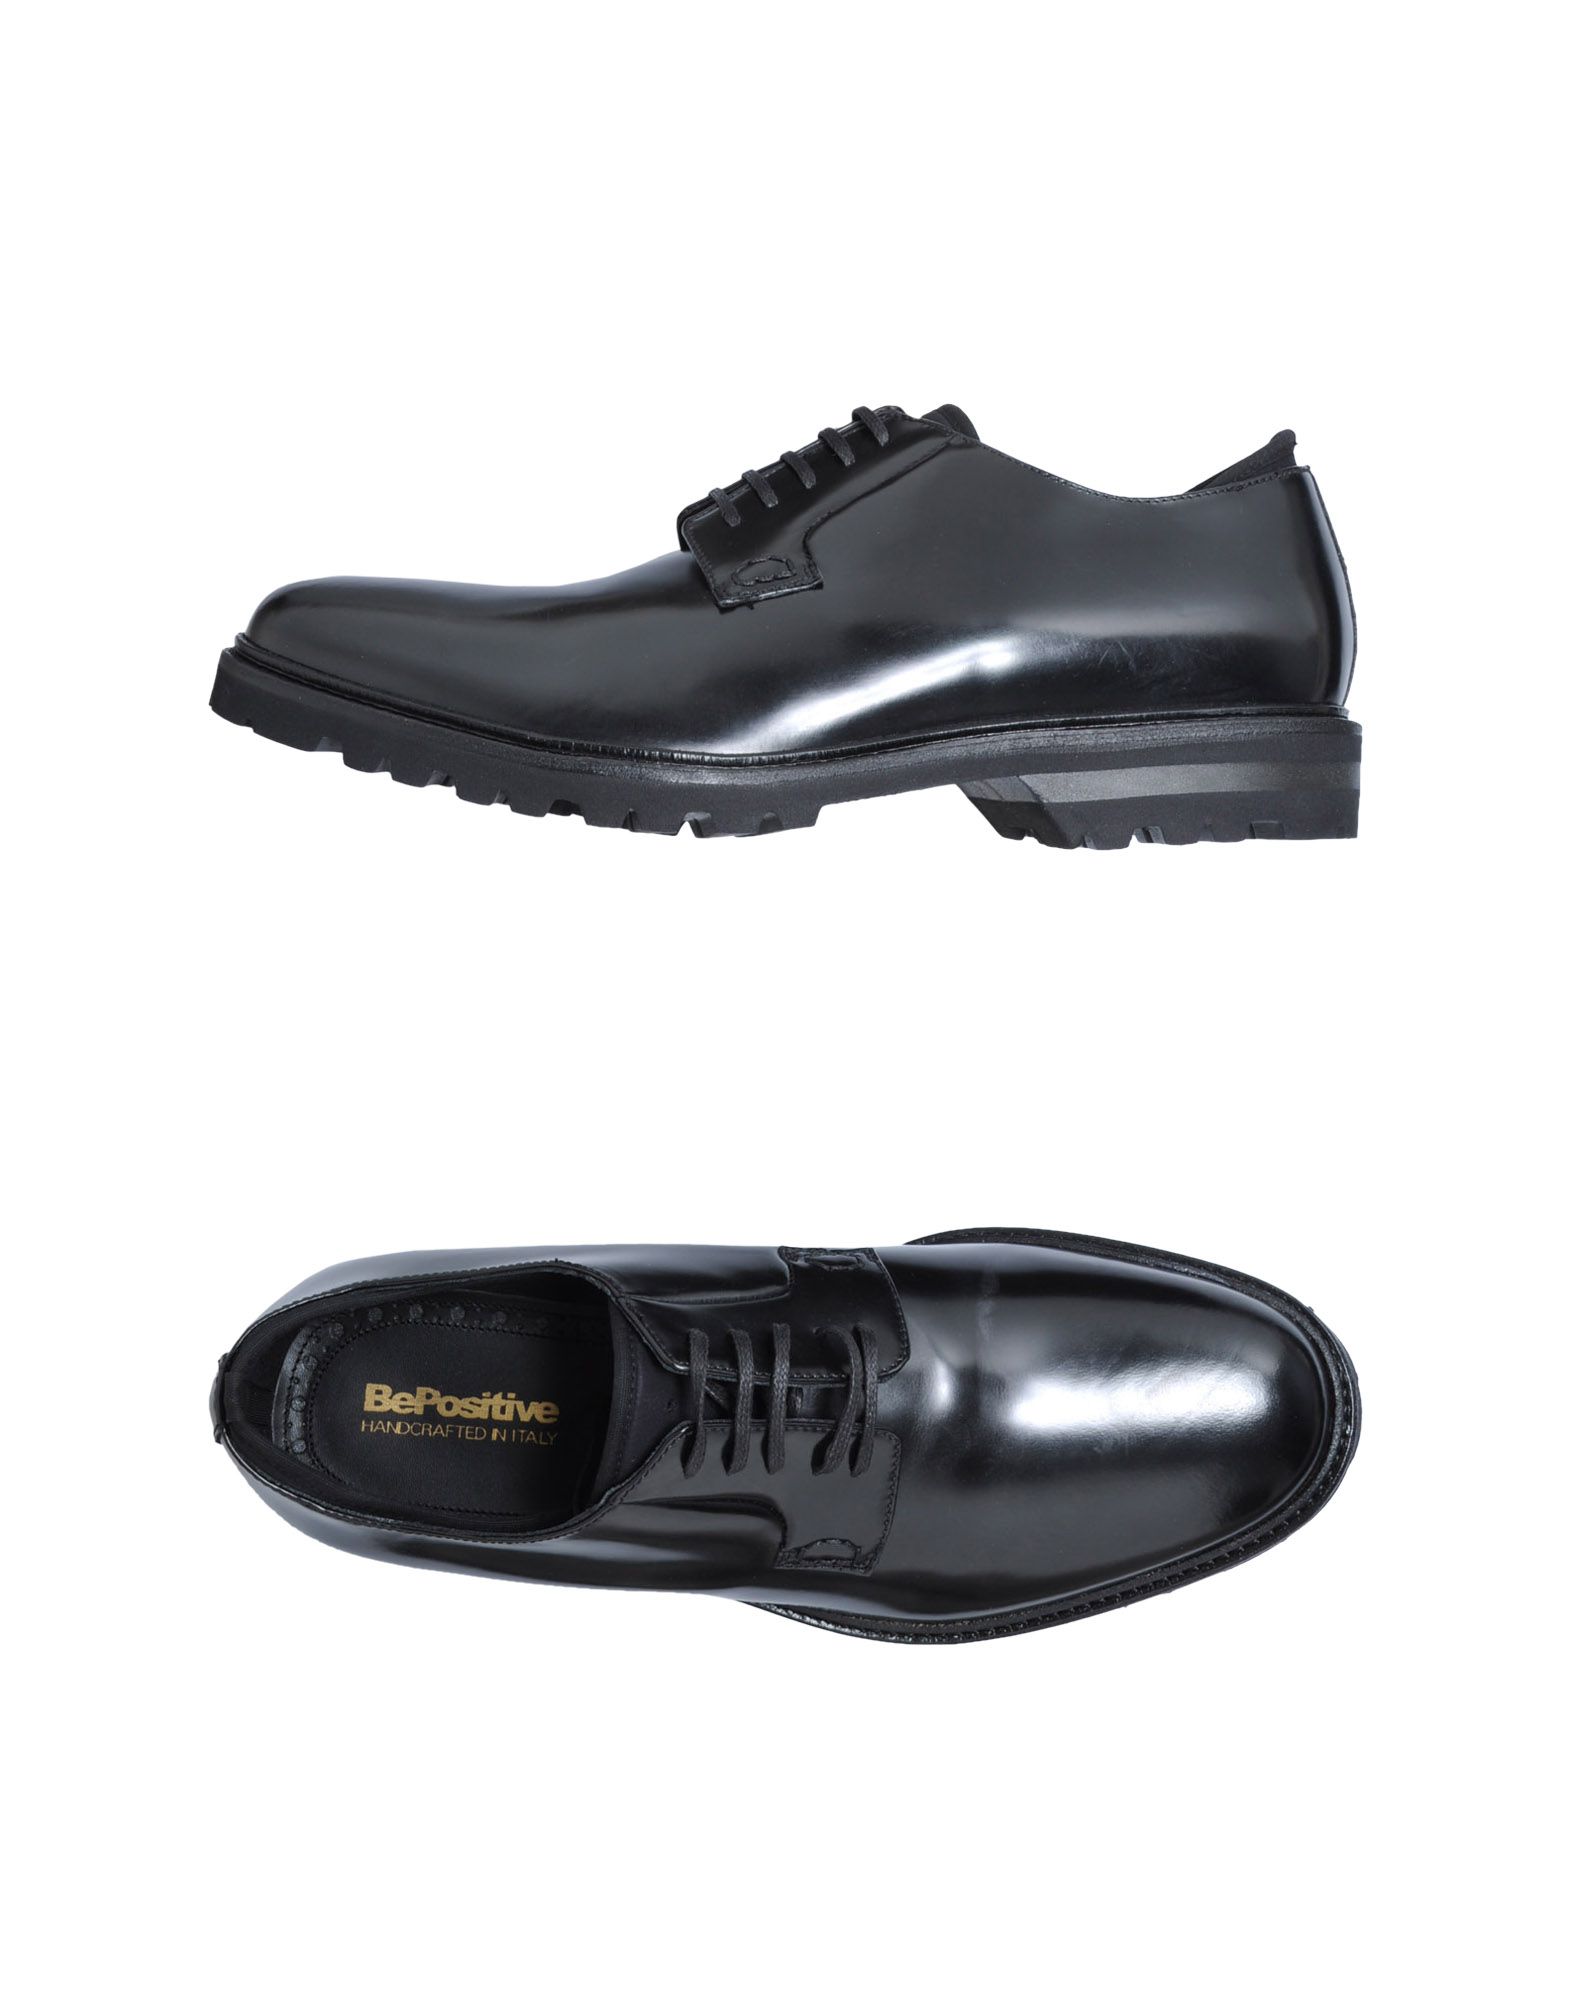 Foto Bepositive Zapatos De Cordones Hombre Negro